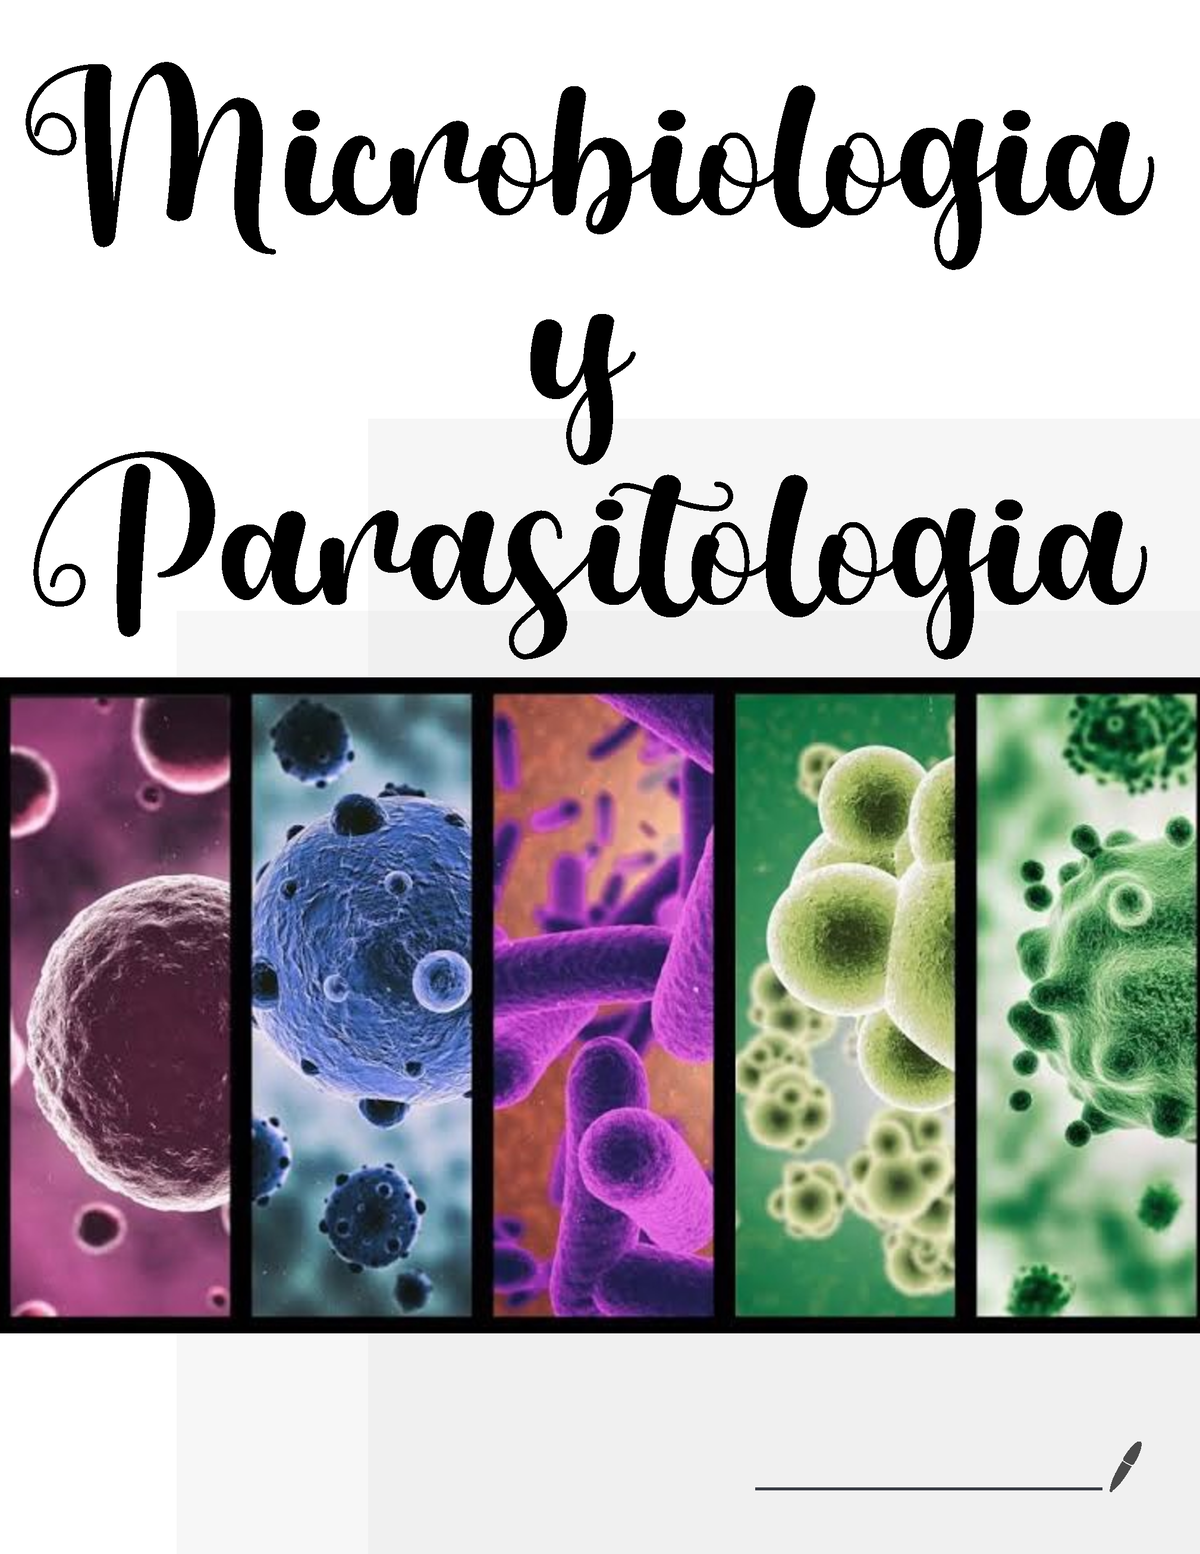 Microbiología introducción - Microbiologia y Parasitologia ...